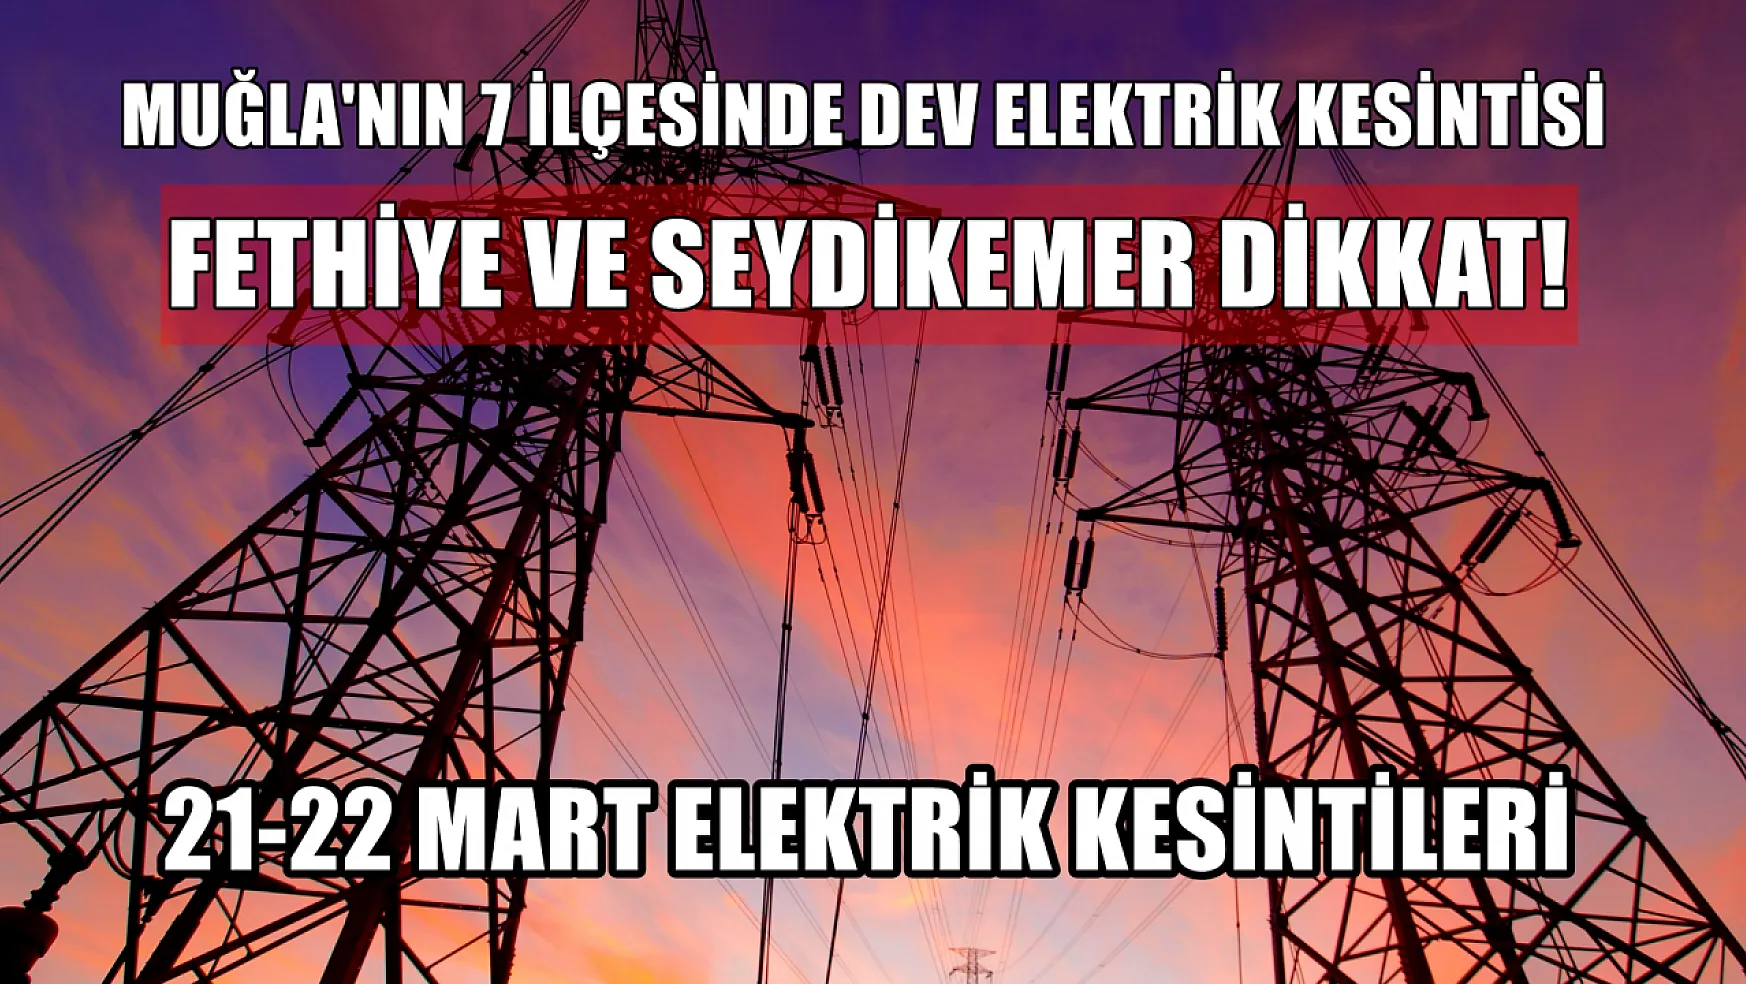 Fethiye ve Seydikemer dahil Muğla'nın 7 ilçesinde elektrik kesintisi! 21-22 Mart elektrik kesintisi detaylar..